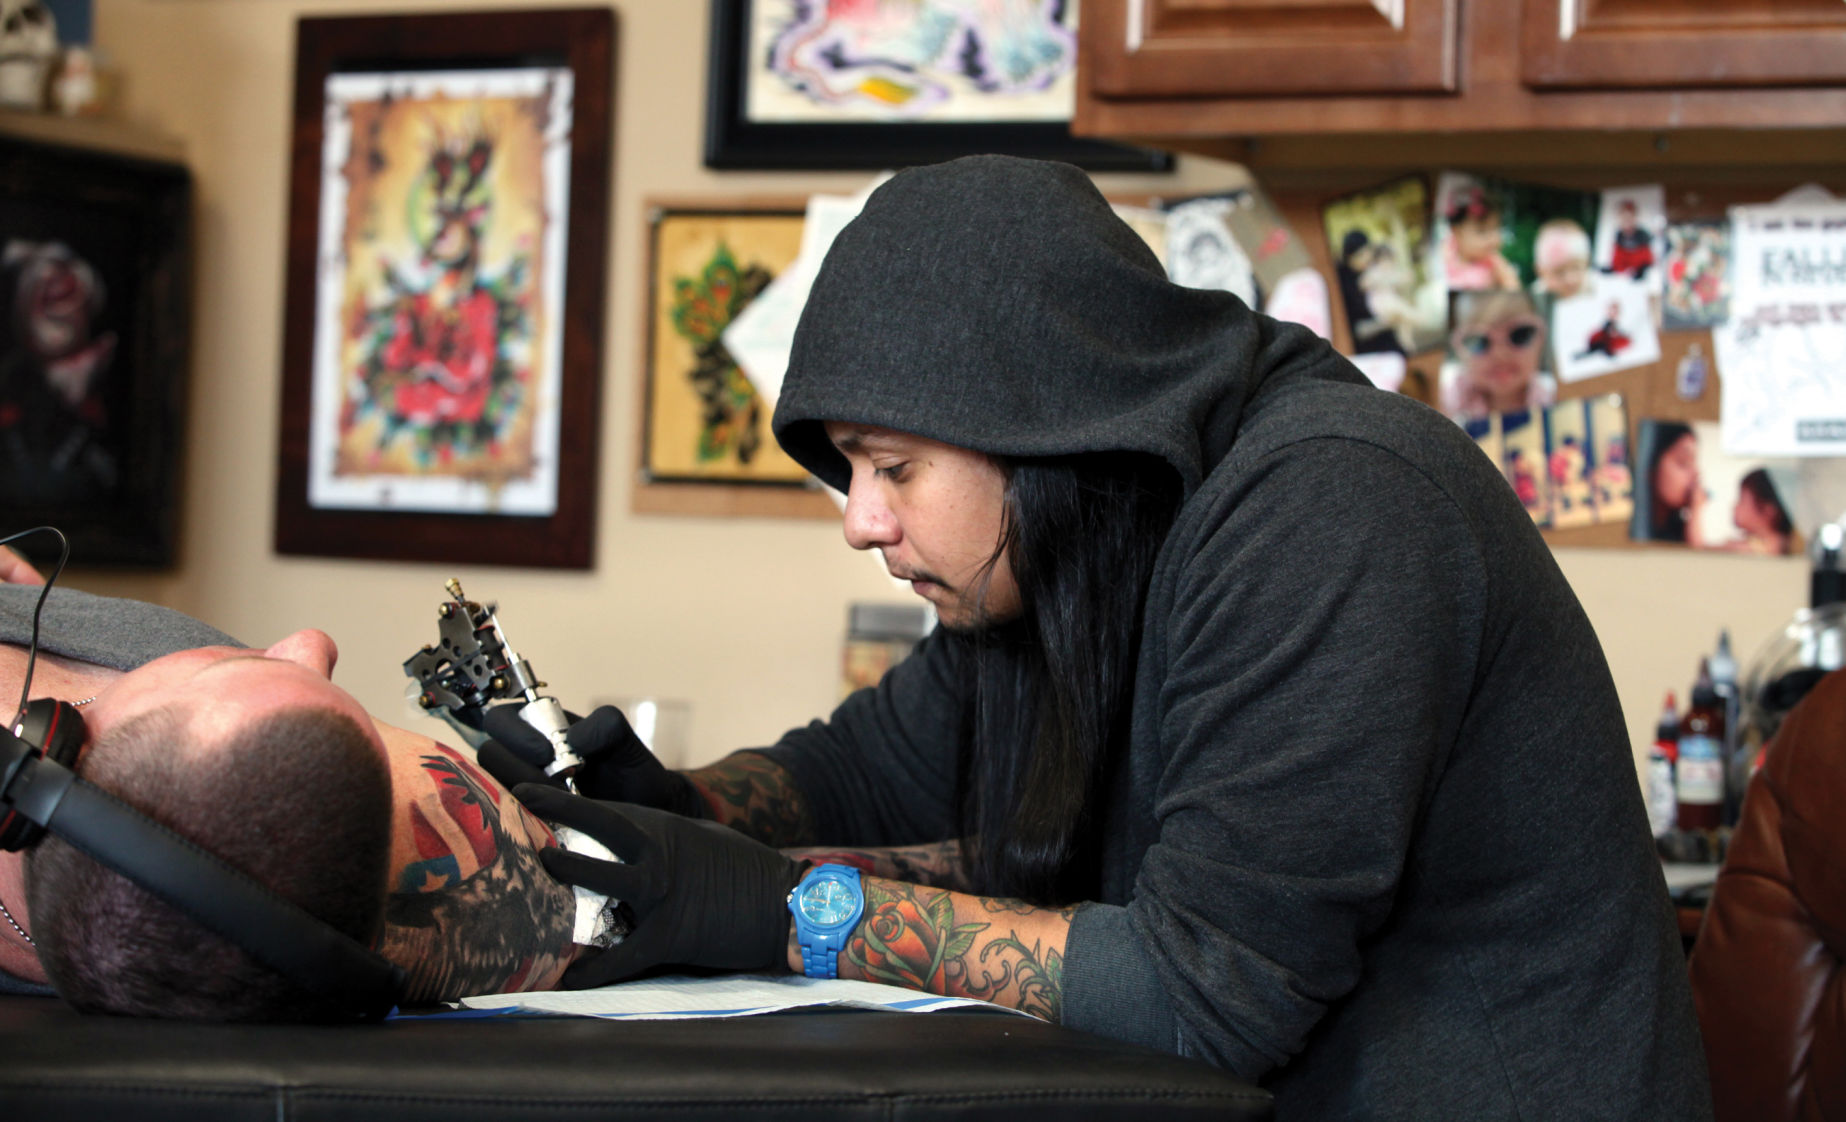 tattwhoink on Instagram Chris DeShields saintta  Bakersfield CA See  more at wwwtattwhoink tattoo tattooartist ta  Joker tattoo Tattoo  artists Tattoos